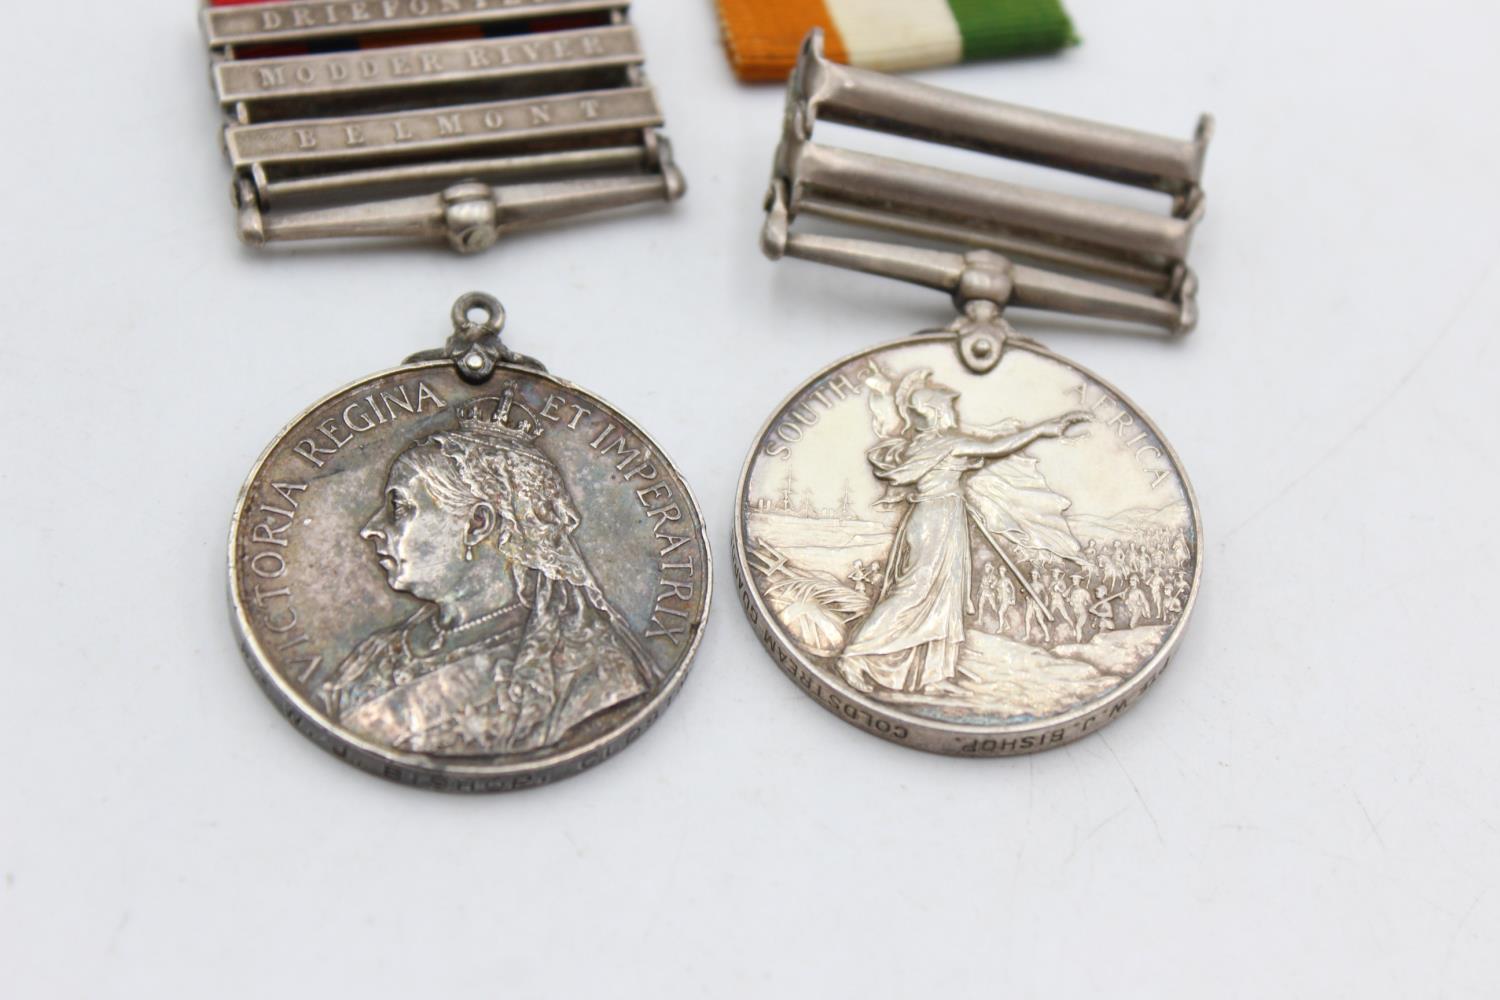 BOER WAR Medal Pair 3 Bar Q.S.A & 2 Bar K.S.A To 7672 PTE W.J Bishop Coldstream Guards In antique - Image 6 of 7